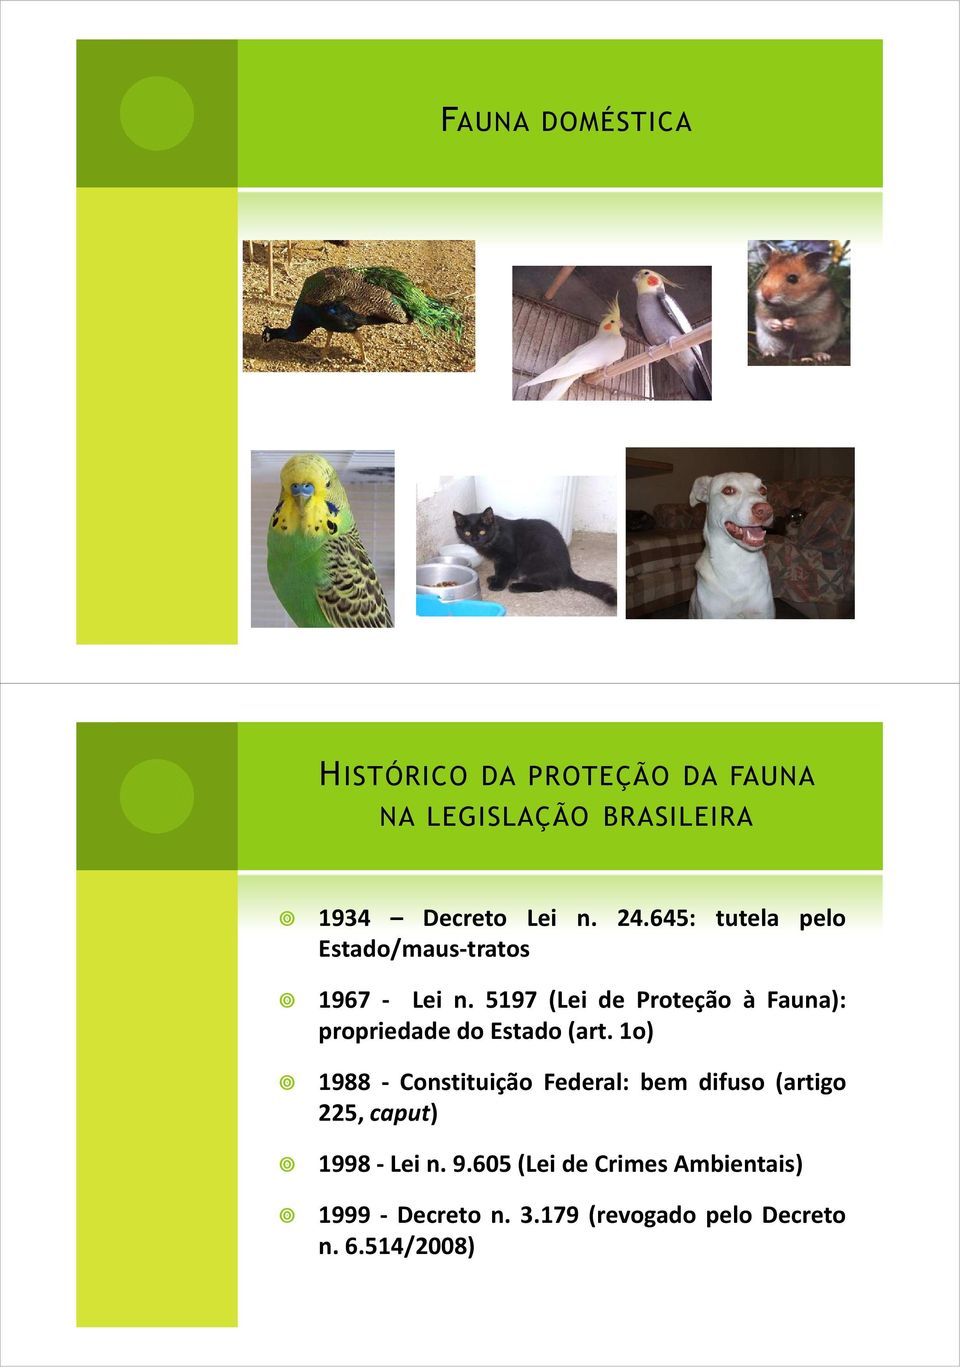 5197 (Lei de Proteção à Fauna): propriedade do Estado(art.